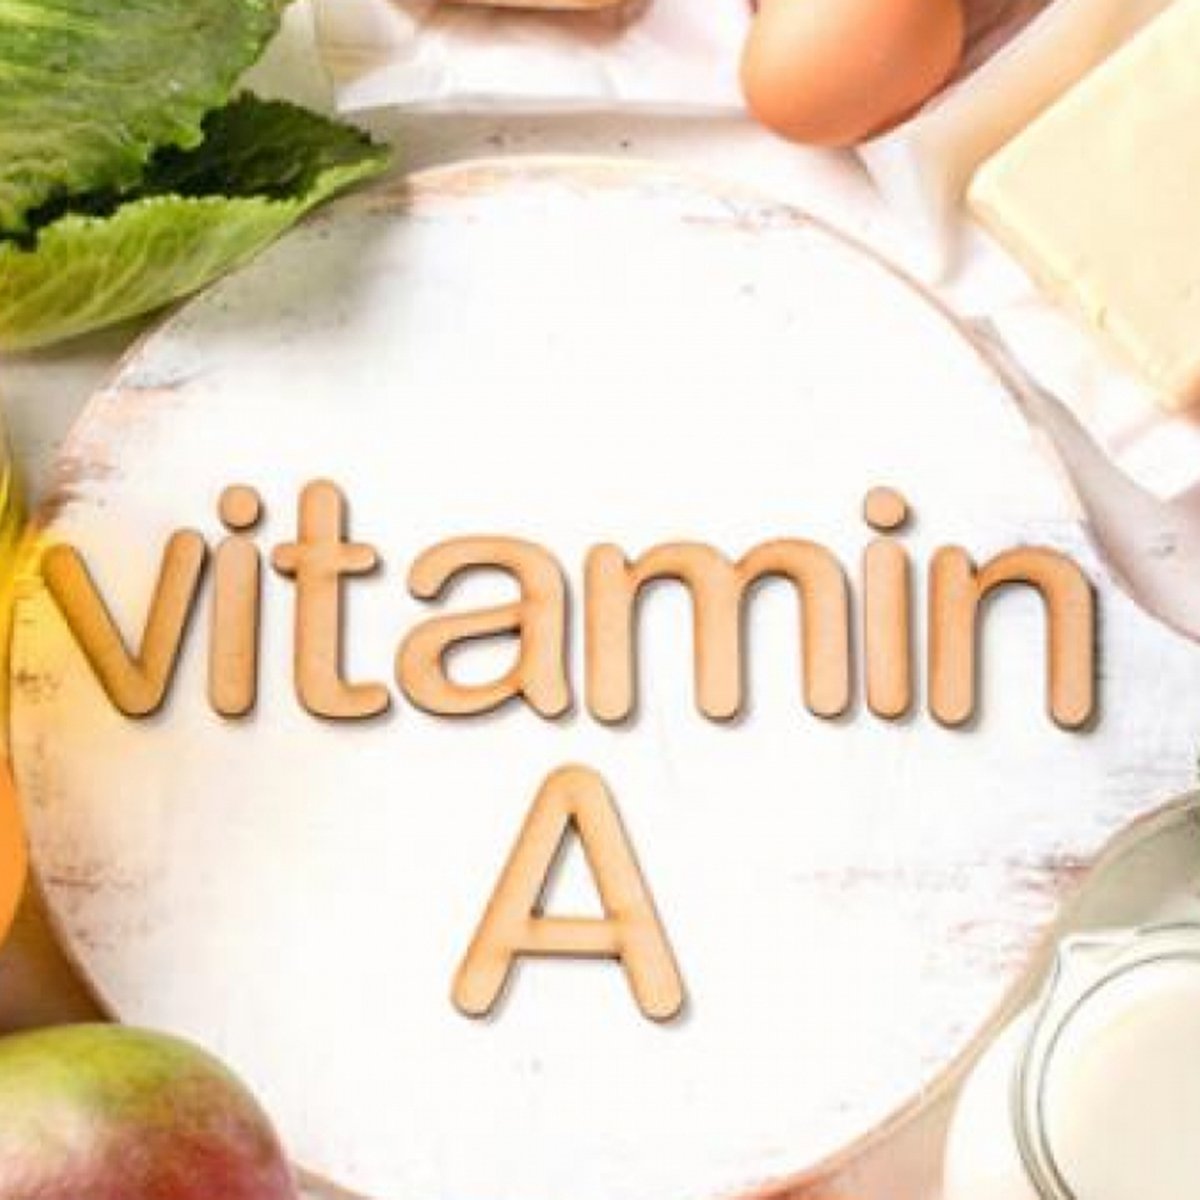 Thiếu Vitamin A Sẽ Bị Bệnh Gì? Giải Đáp Tất Tần Tật 2022